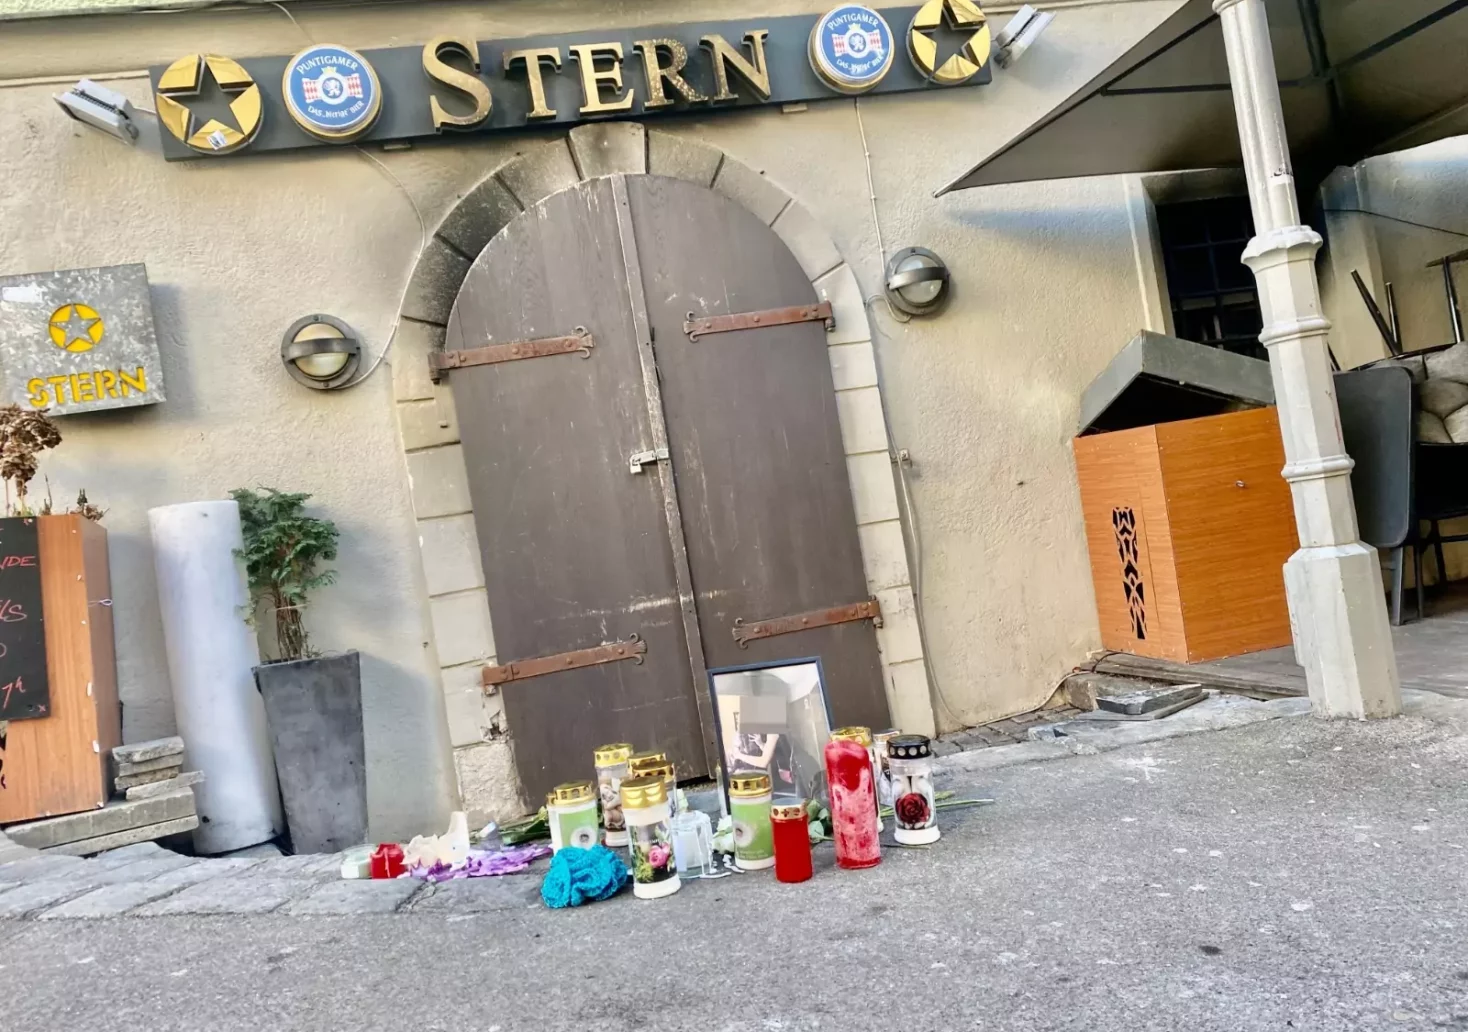 Bild auf 5min.at zeigt die Grazer Bar "Stern", welche sich in der Sporgasse befindet. Davor sind Kerzen und Rosen angebracht, um dem Brandopfer zu gedenken, welches dort in der Silvesternacht starb.